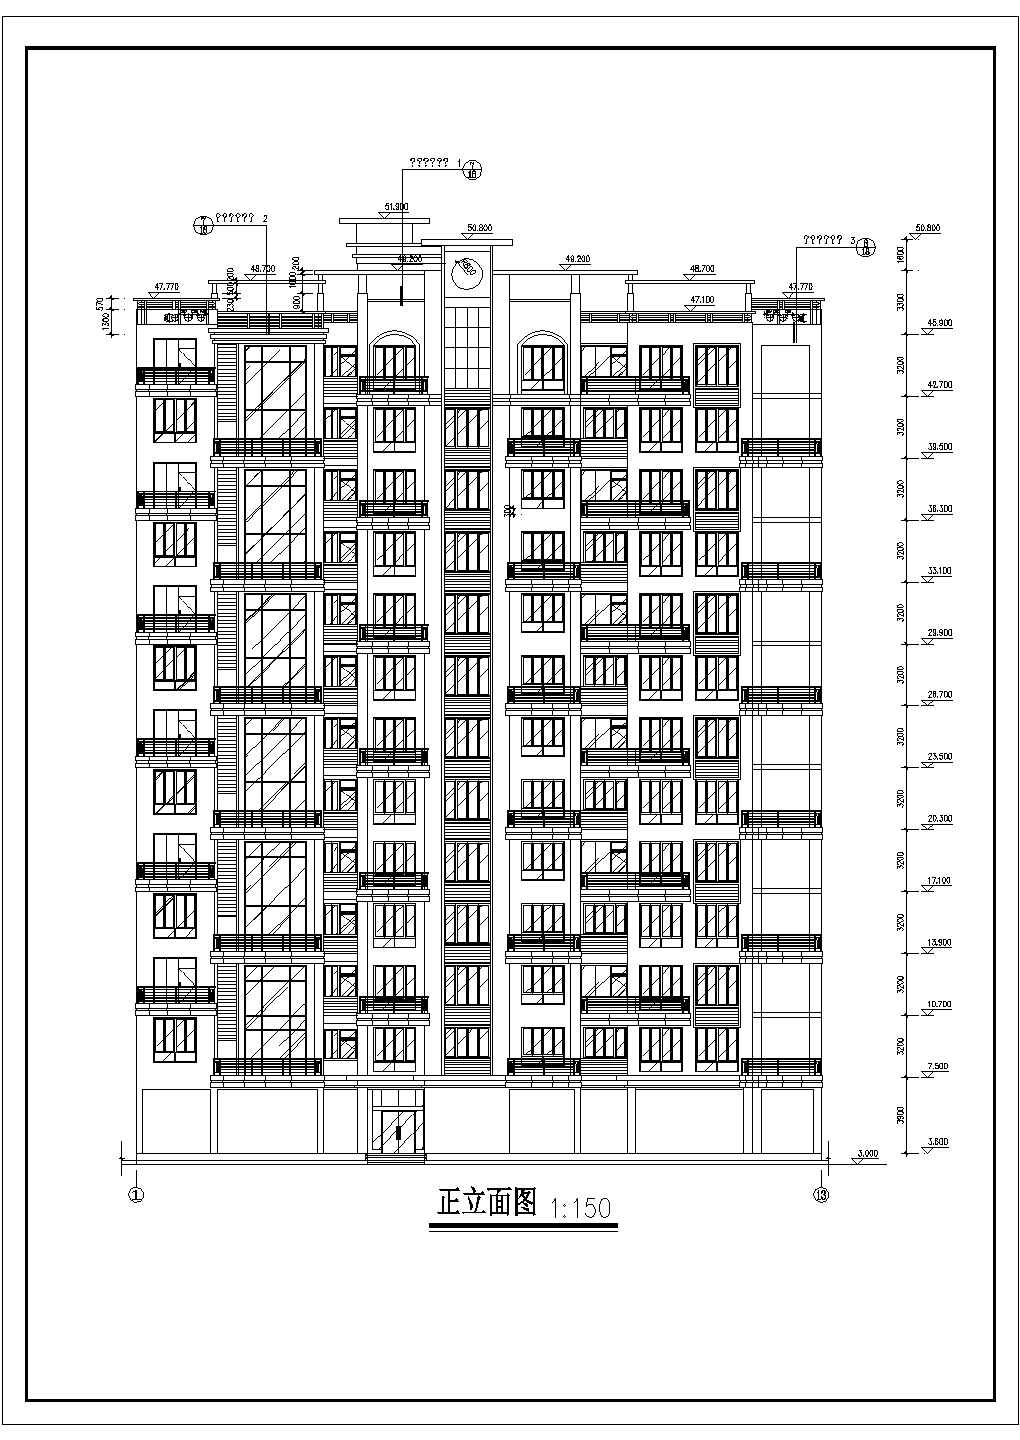 13层住宅楼建筑设计施工cad平面布置方案图(屋顶景观花架)